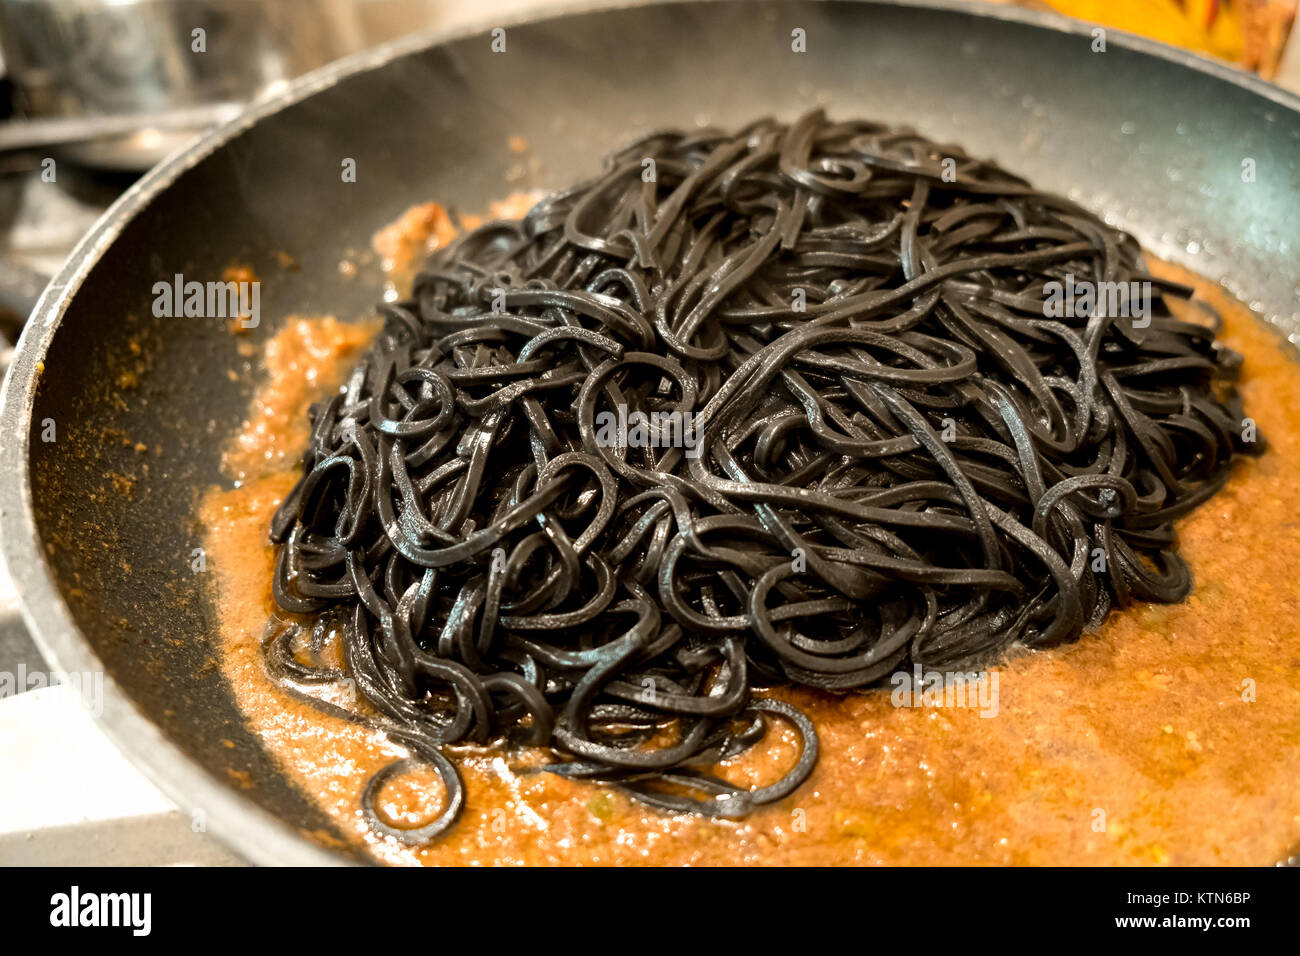 Les pâtes noires l'encre de seiche dans une casserole - italien taglierini al nero di seppia Banque D'Images